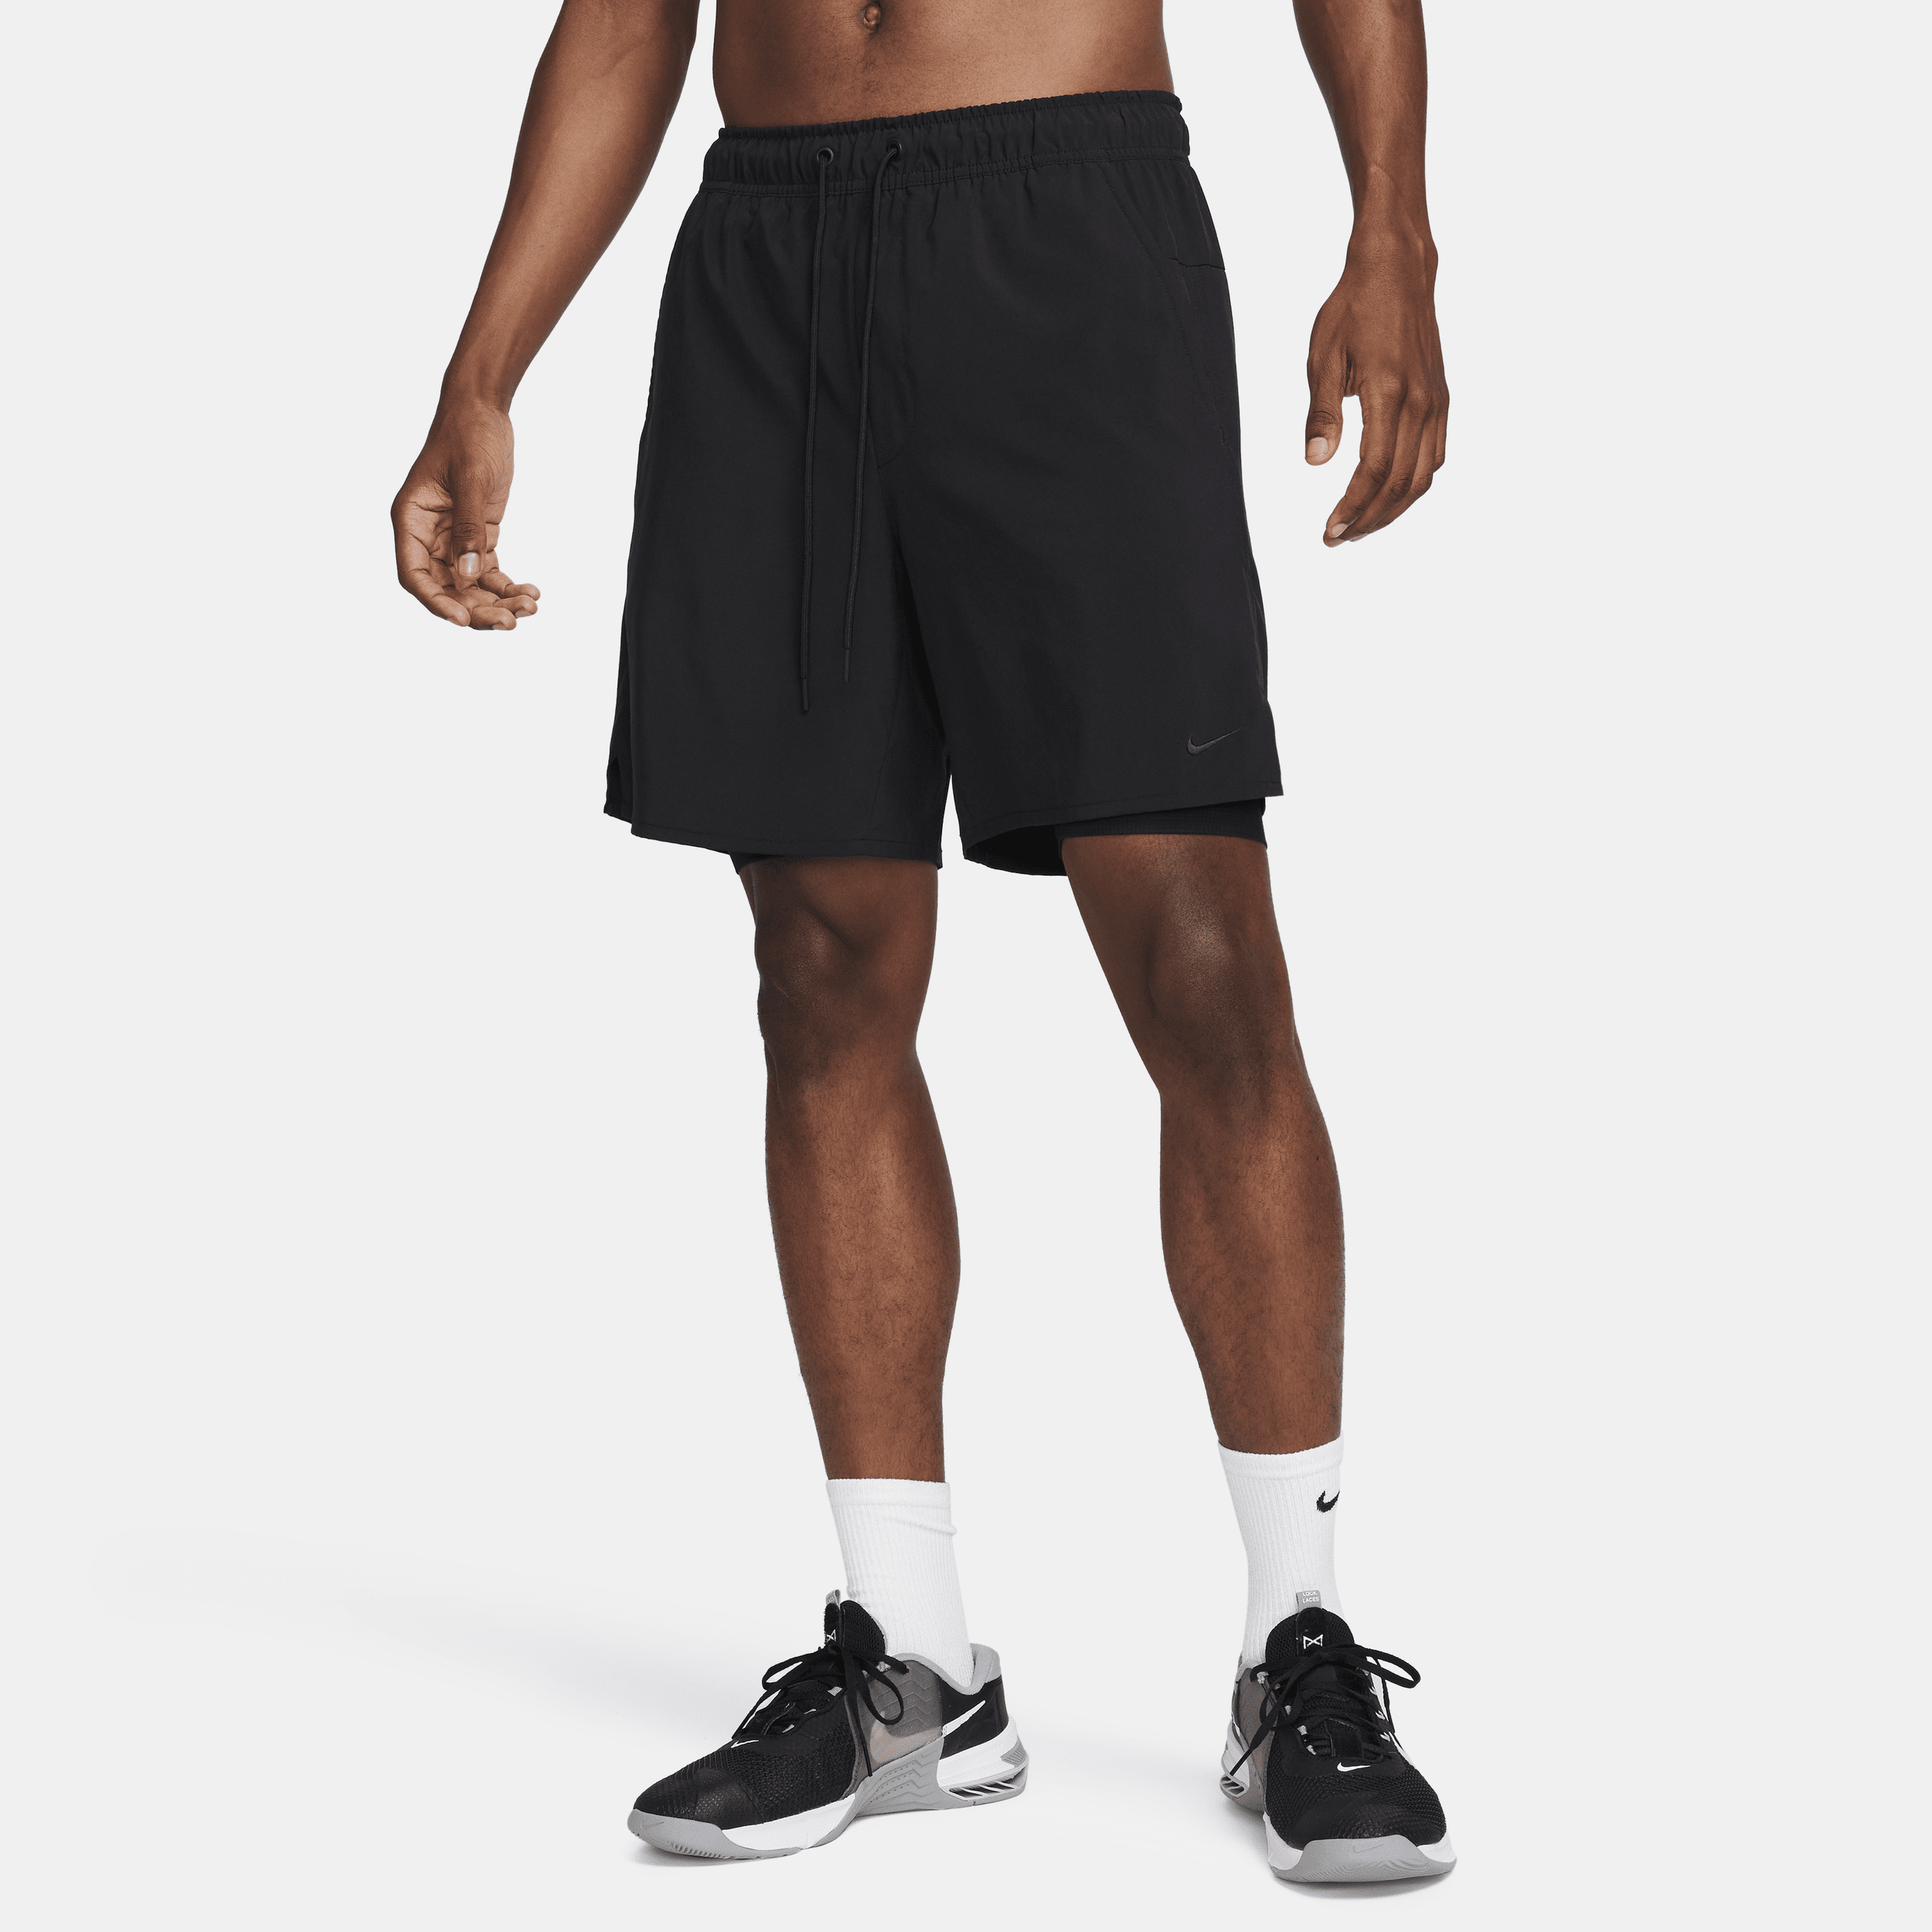 Nike Unlimited multifunctionele 2-in-1 herenshorts met Dri-FIT (18 cm) - Zwart